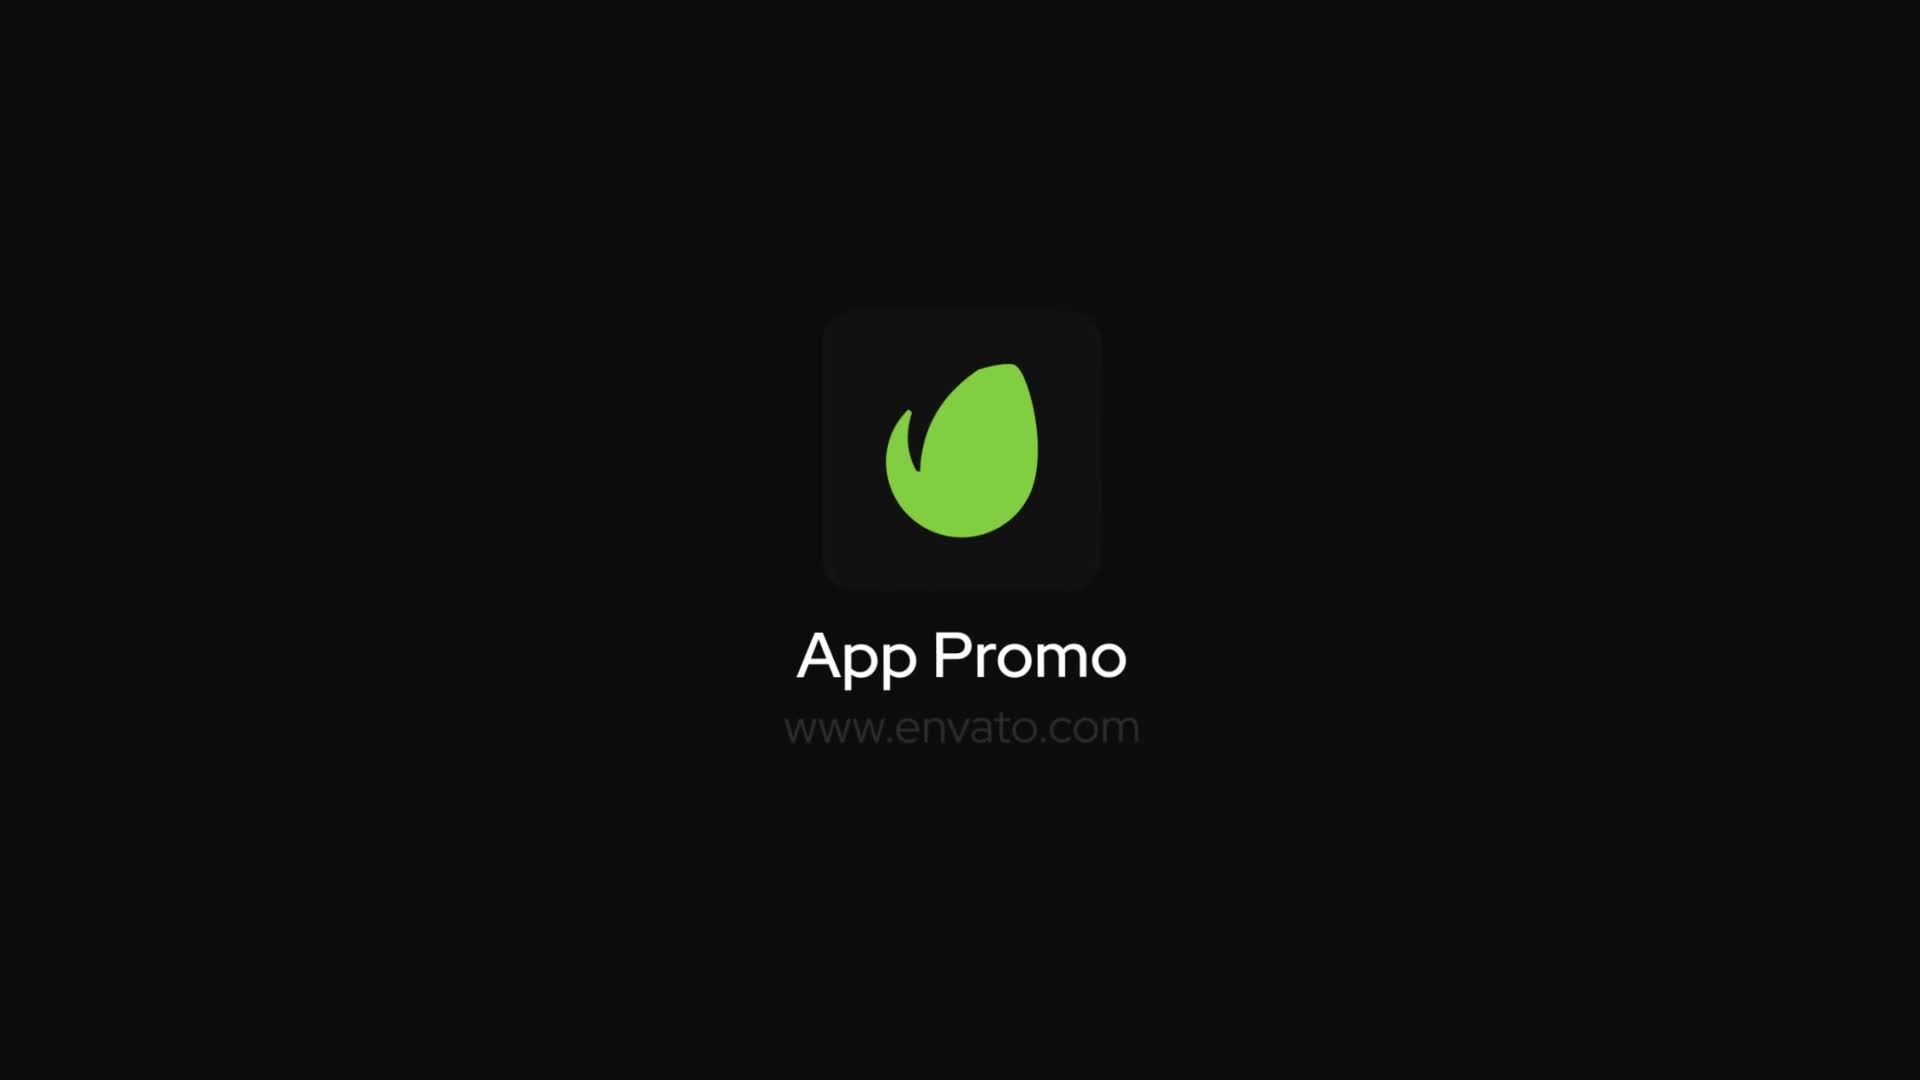 Digital App Promo for Premiere Pro Videohive 37431327 Premiere Pro Image 1